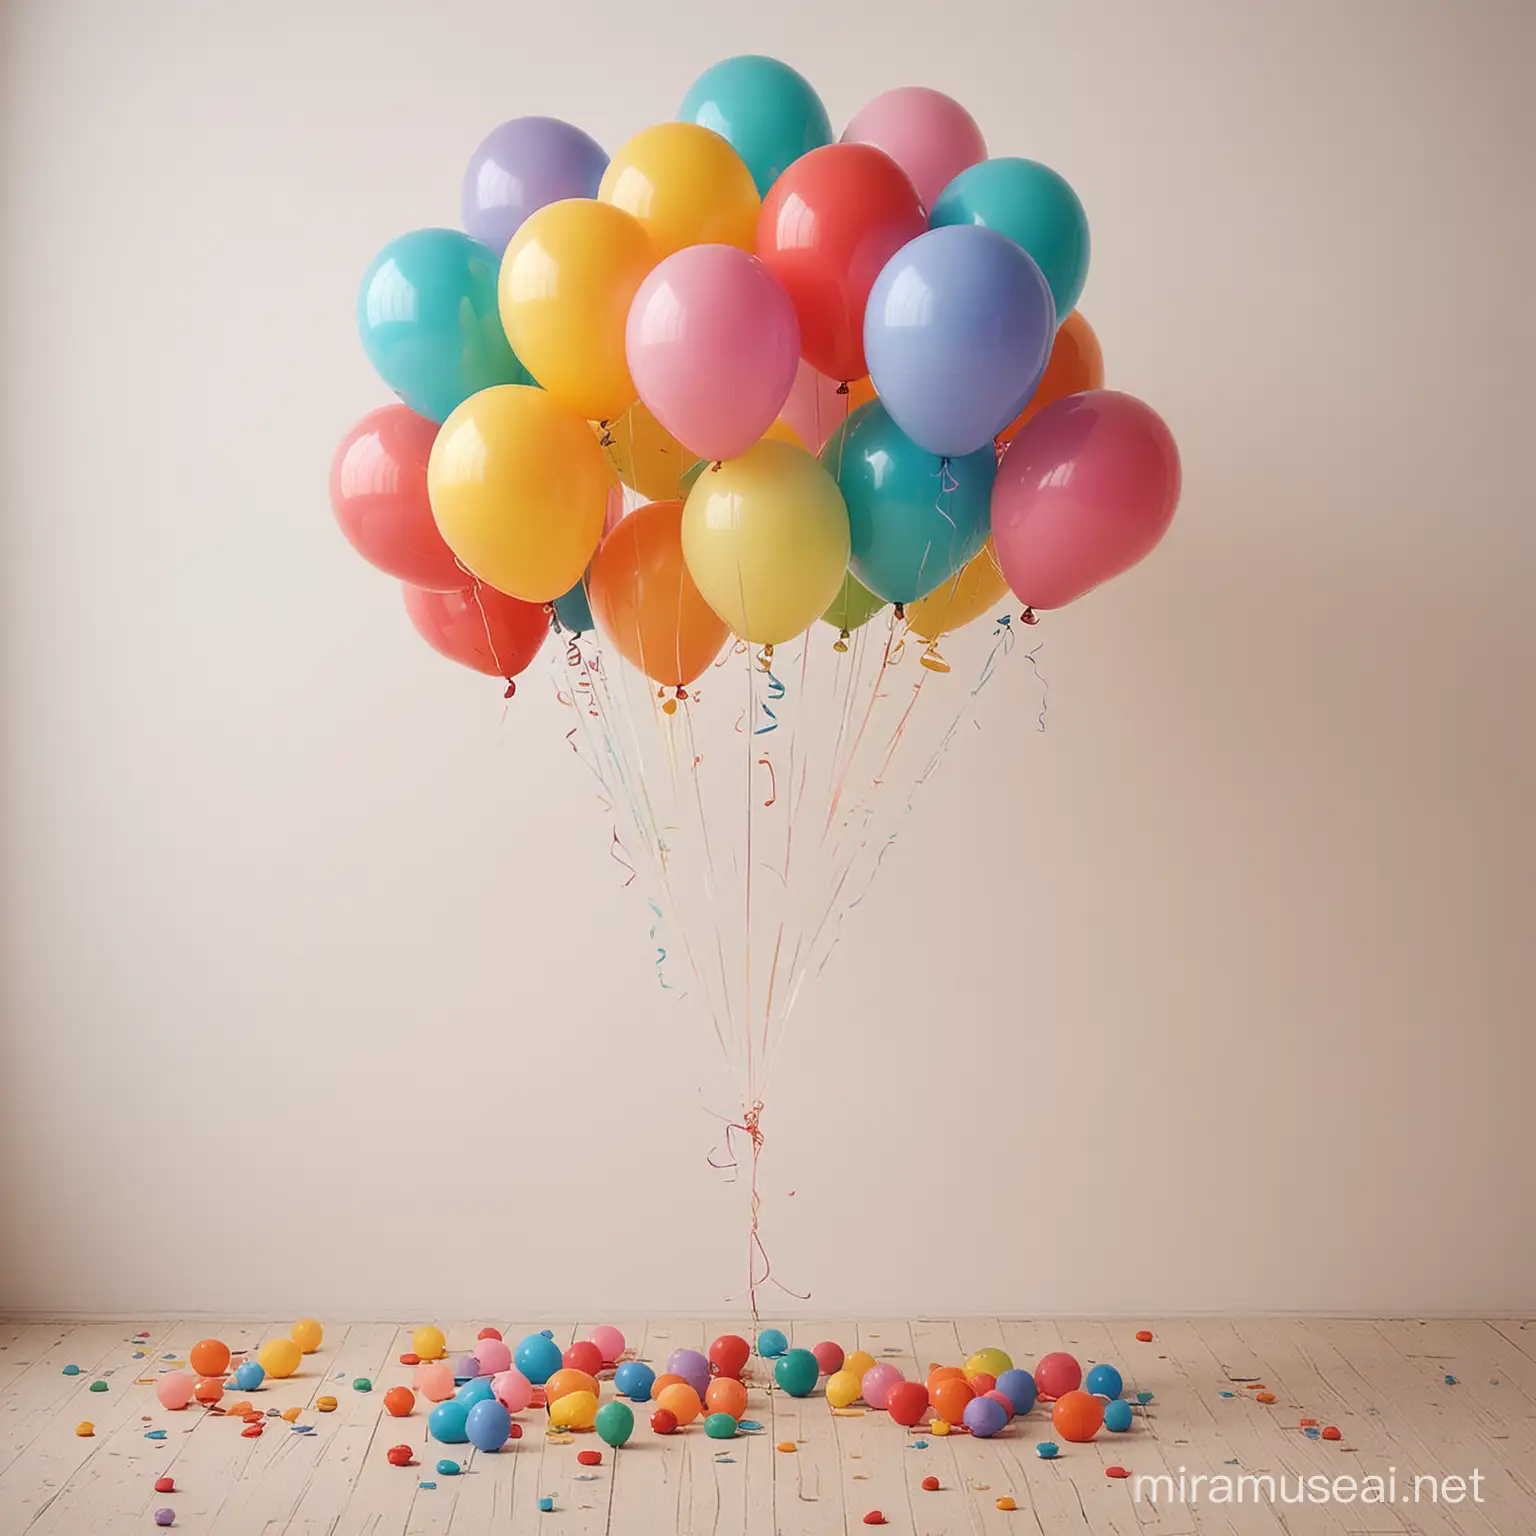 彩色气球，充满童趣的场景，简单干净